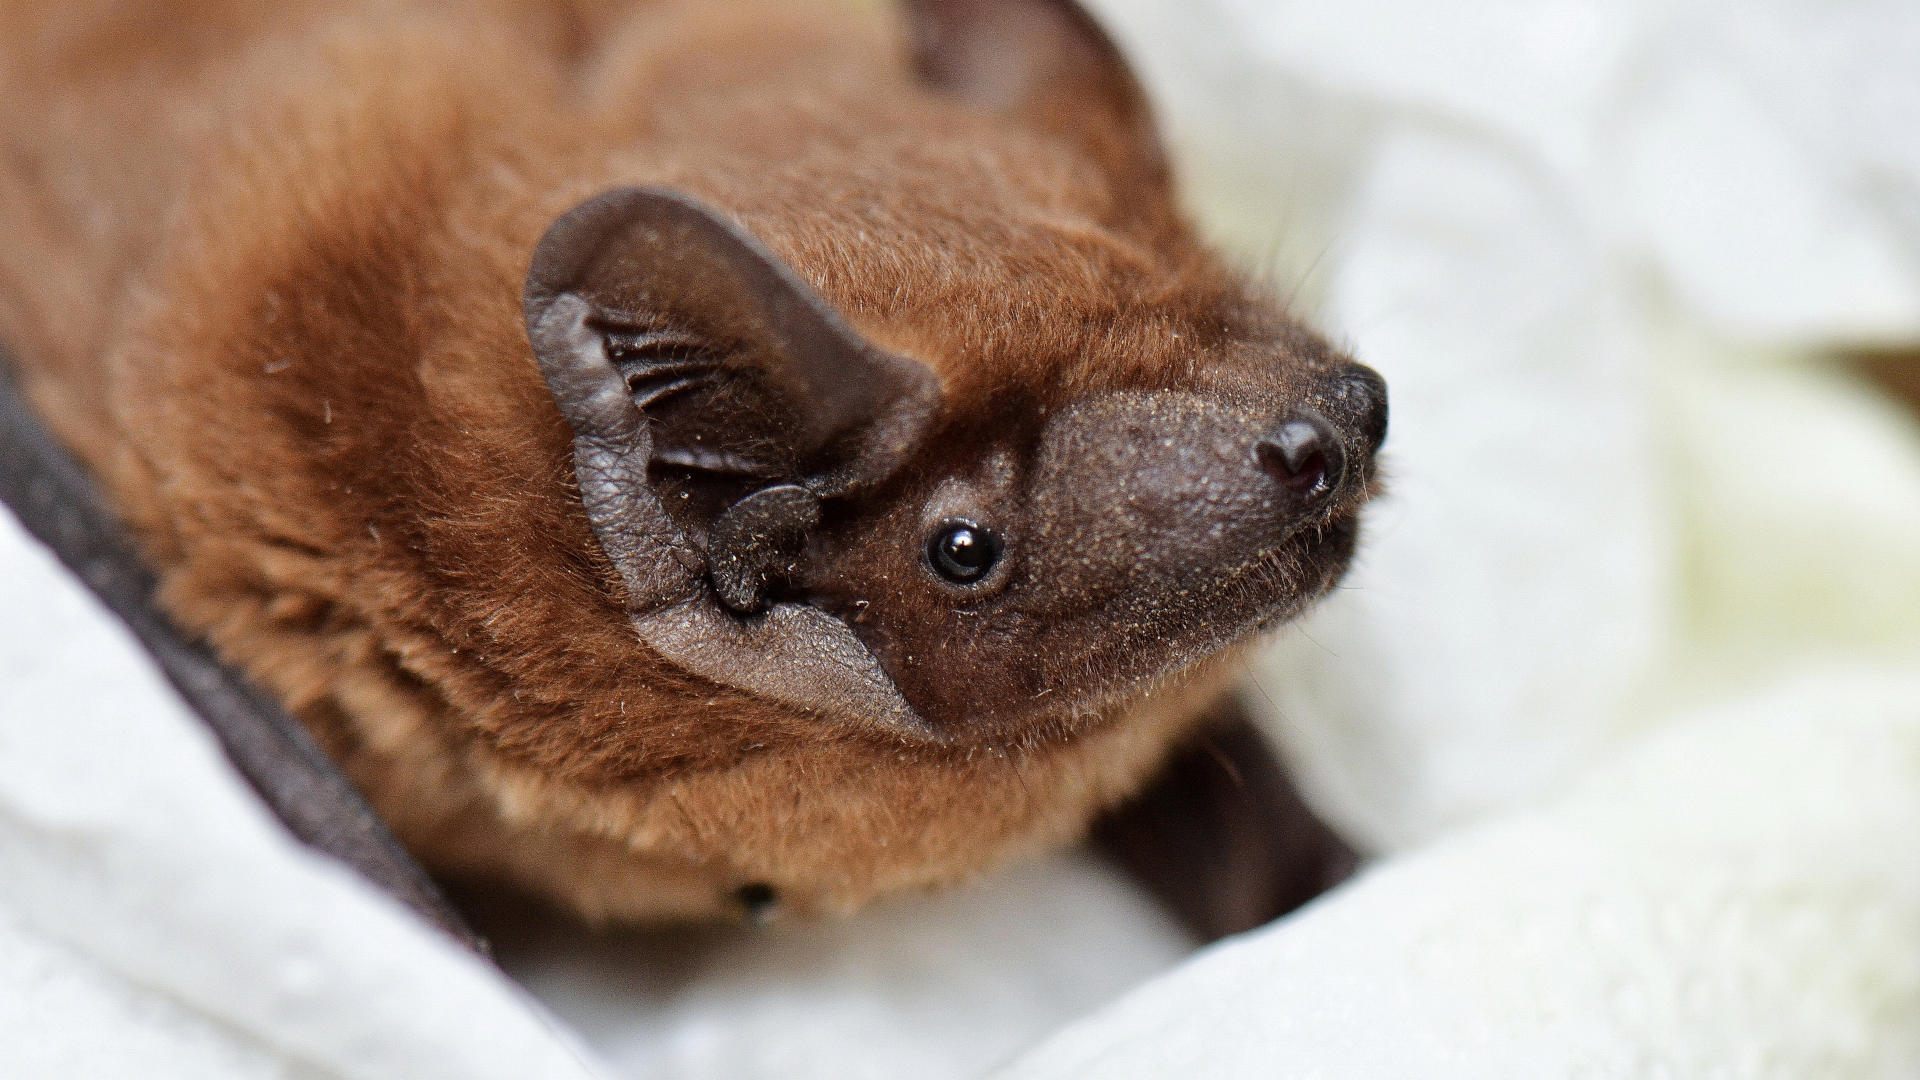 A common noctules bat, Nyctalus noctula, rescued in Ukraine.